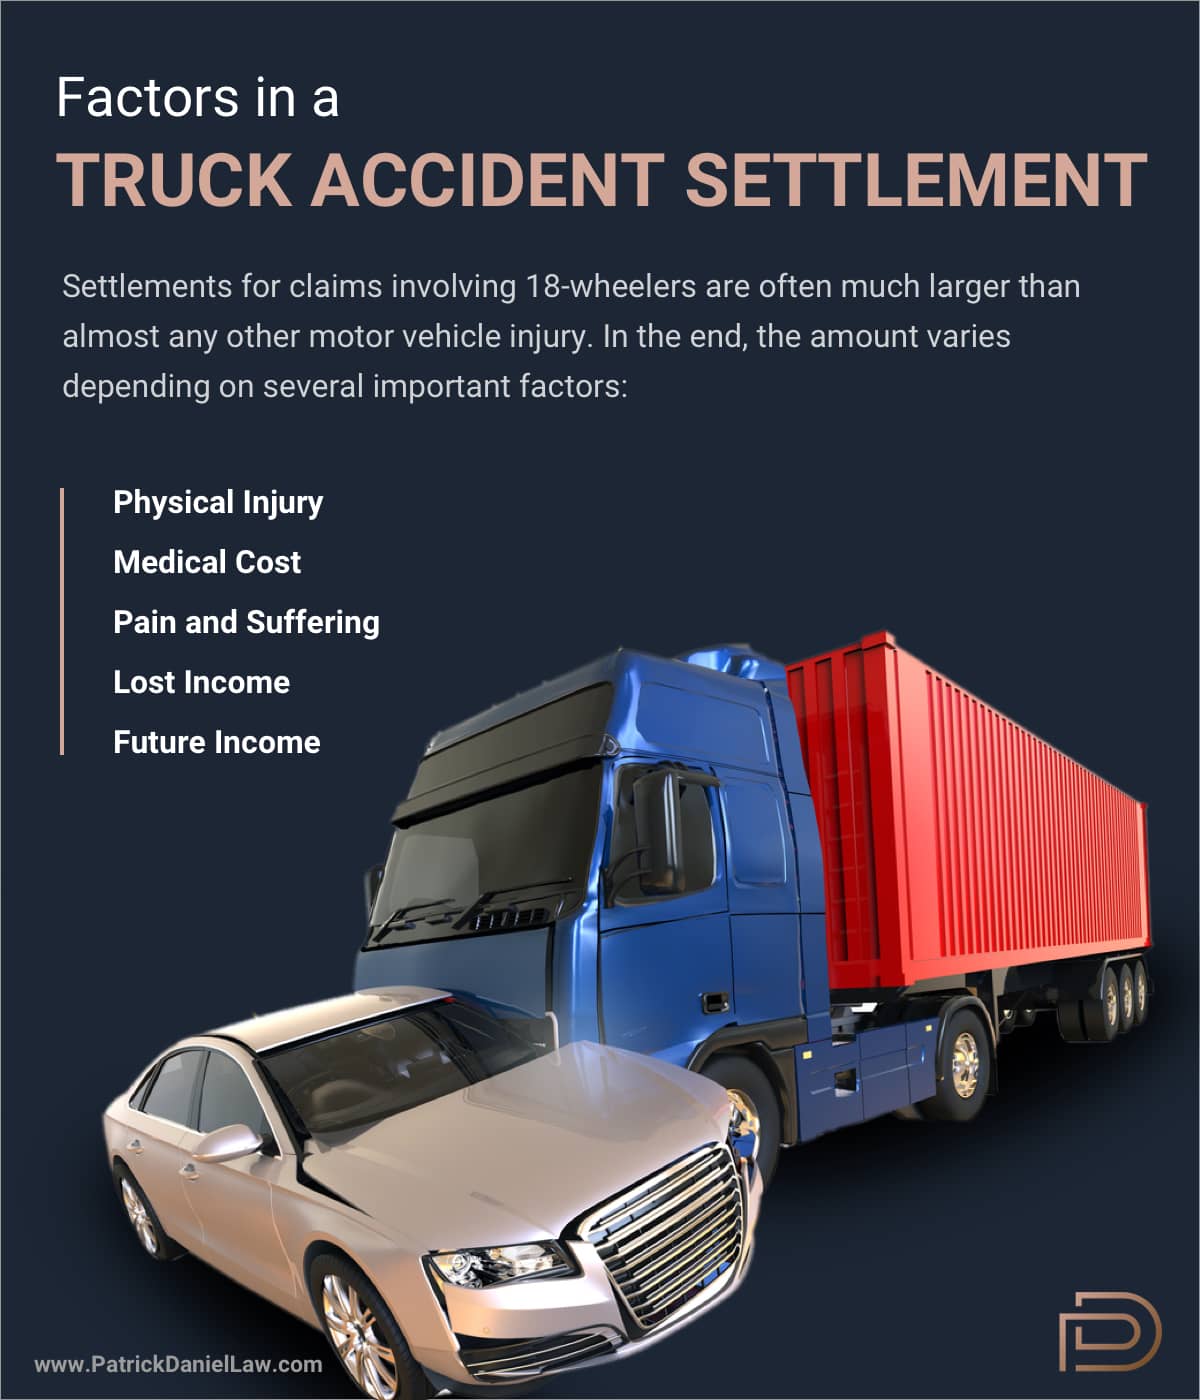 Factors in a Truck Accident Settlement | Patrick Daniel Law